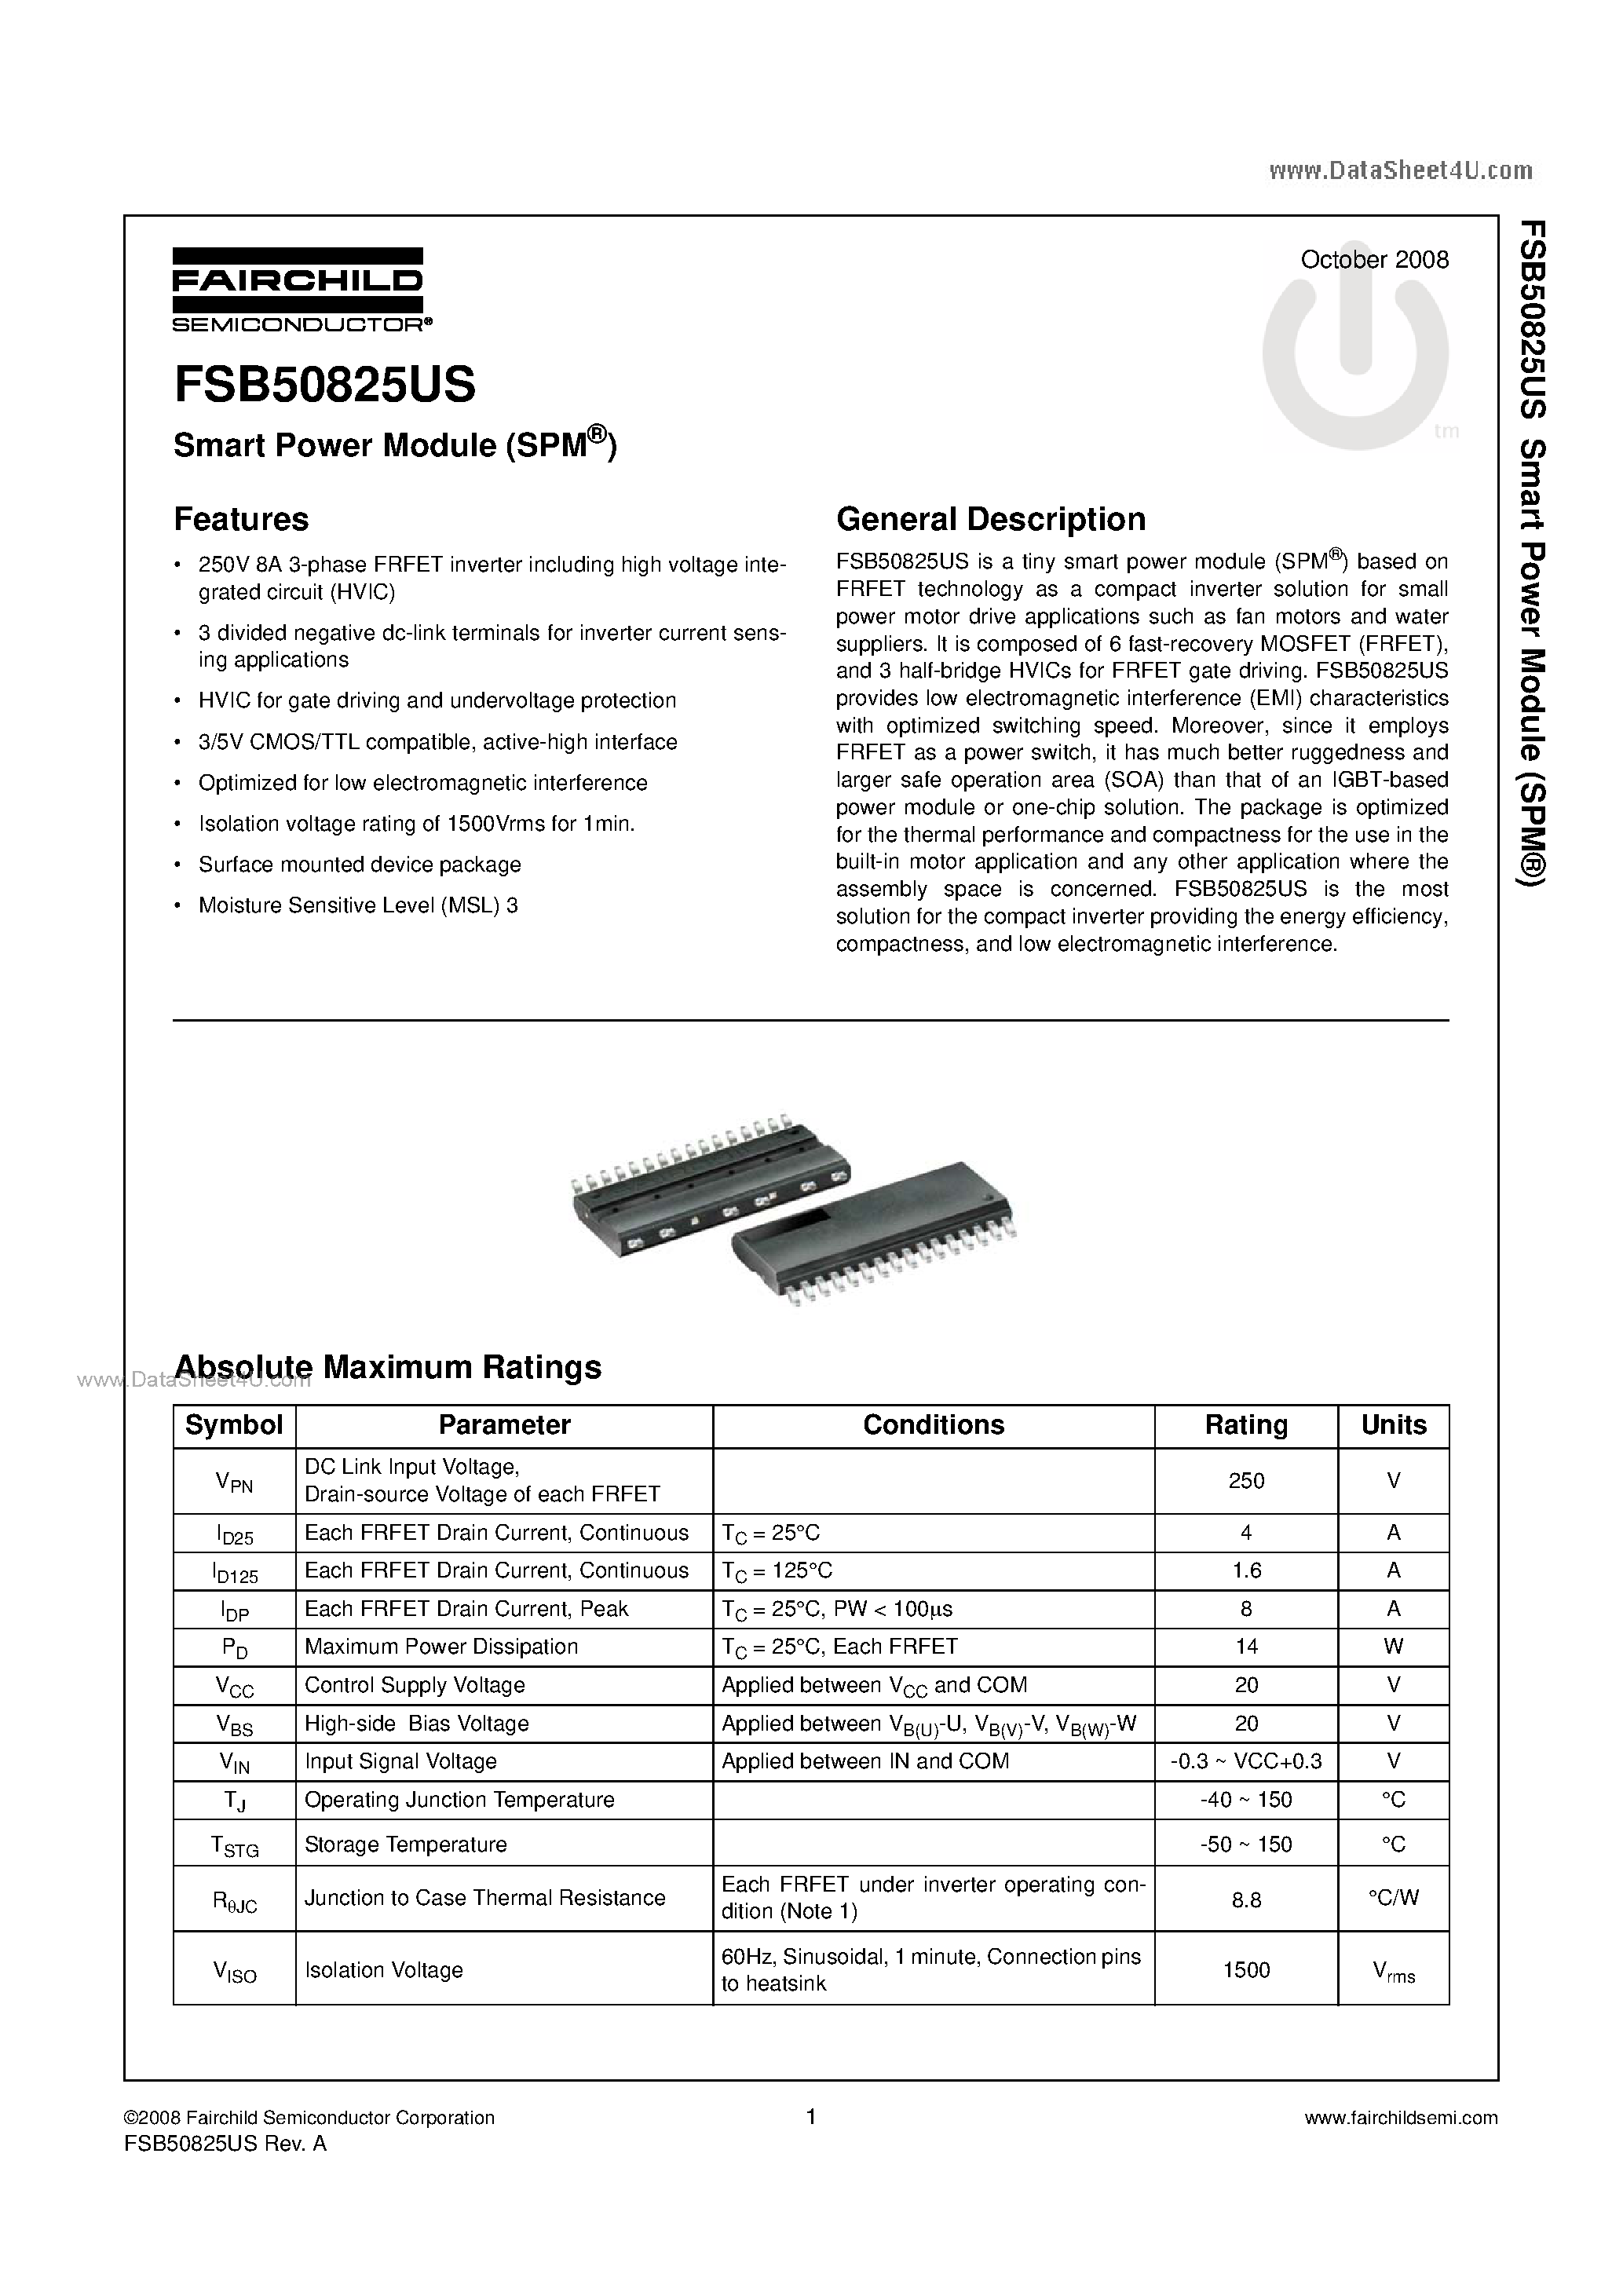 Даташит FSB50825US - Smart Power Module страница 1